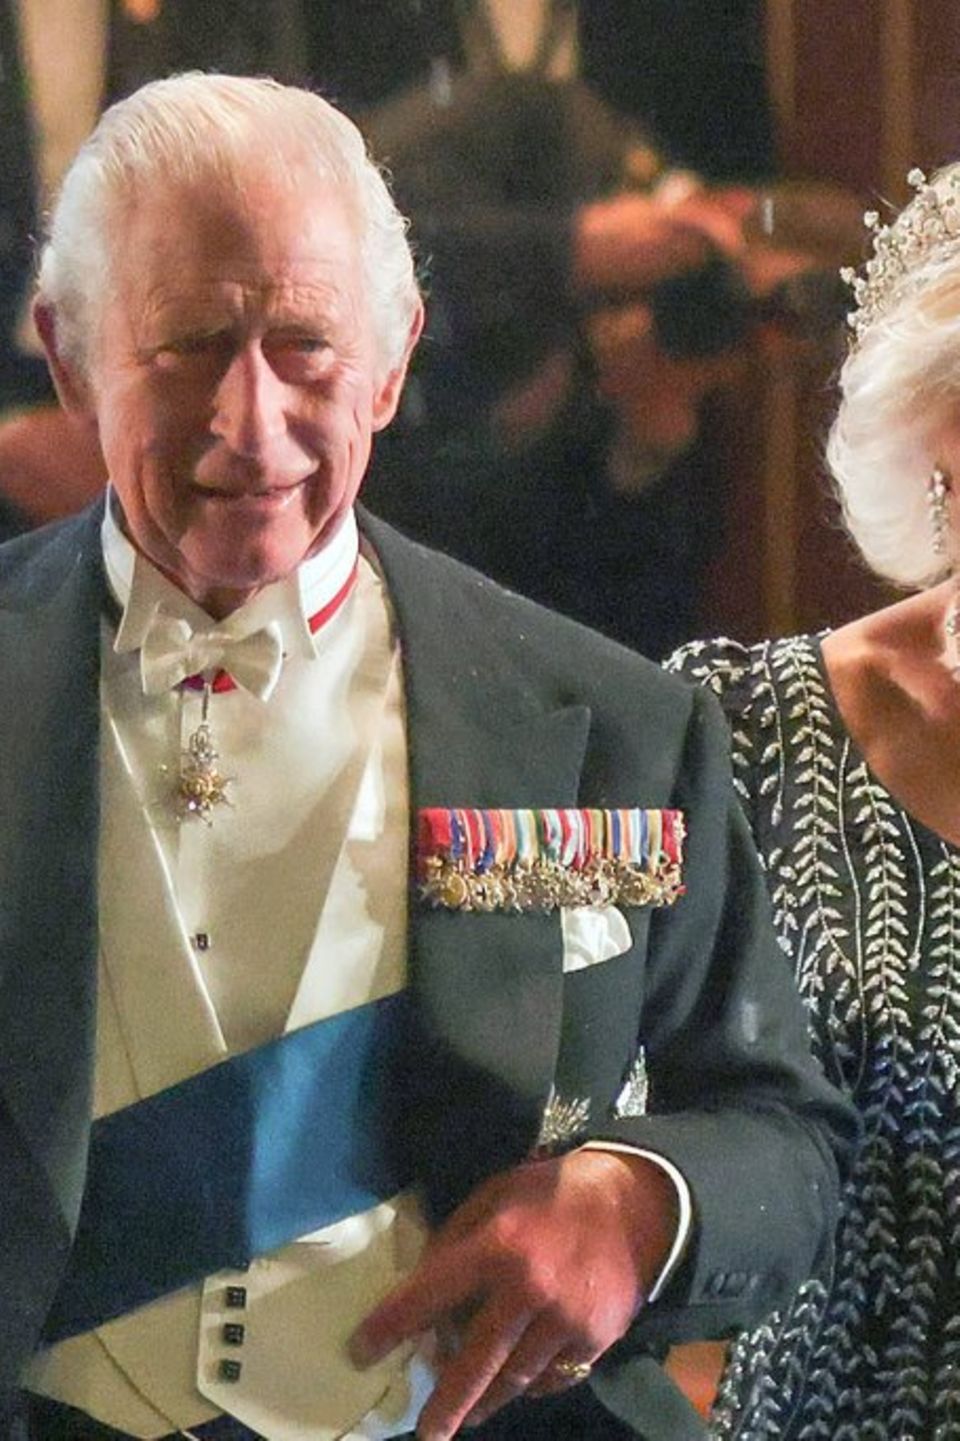 König Charles und seine Frau Camilla beim Bankett in London.